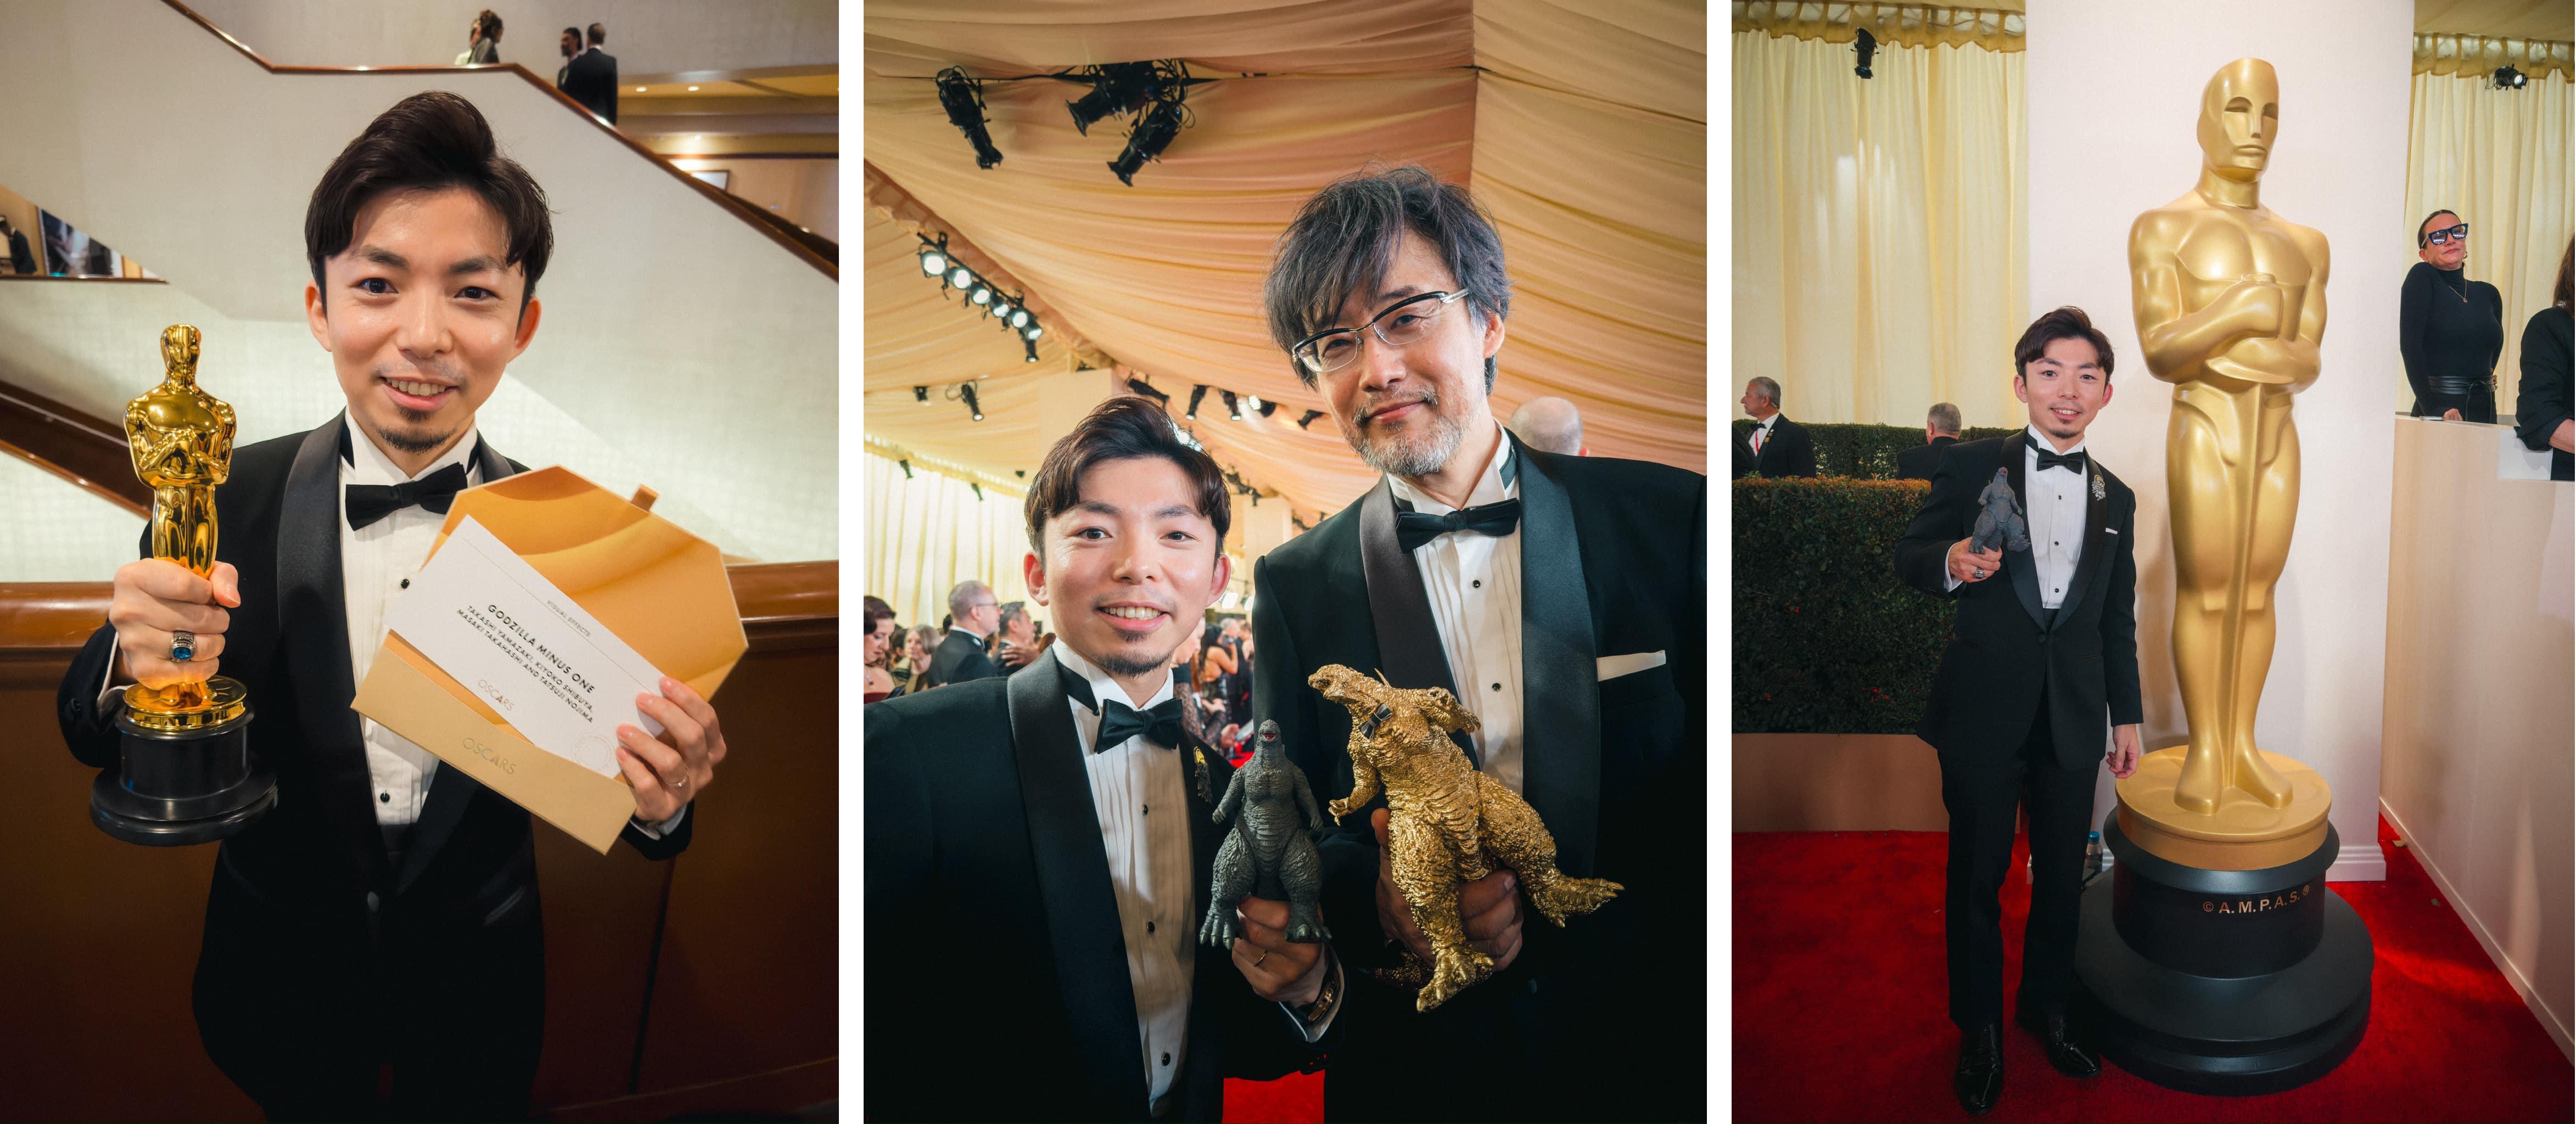 [1] Ryo holding award and Oscar envelope [2] Ryo with director Takashi Yamazaki [3] Ryo next to Oscars statue